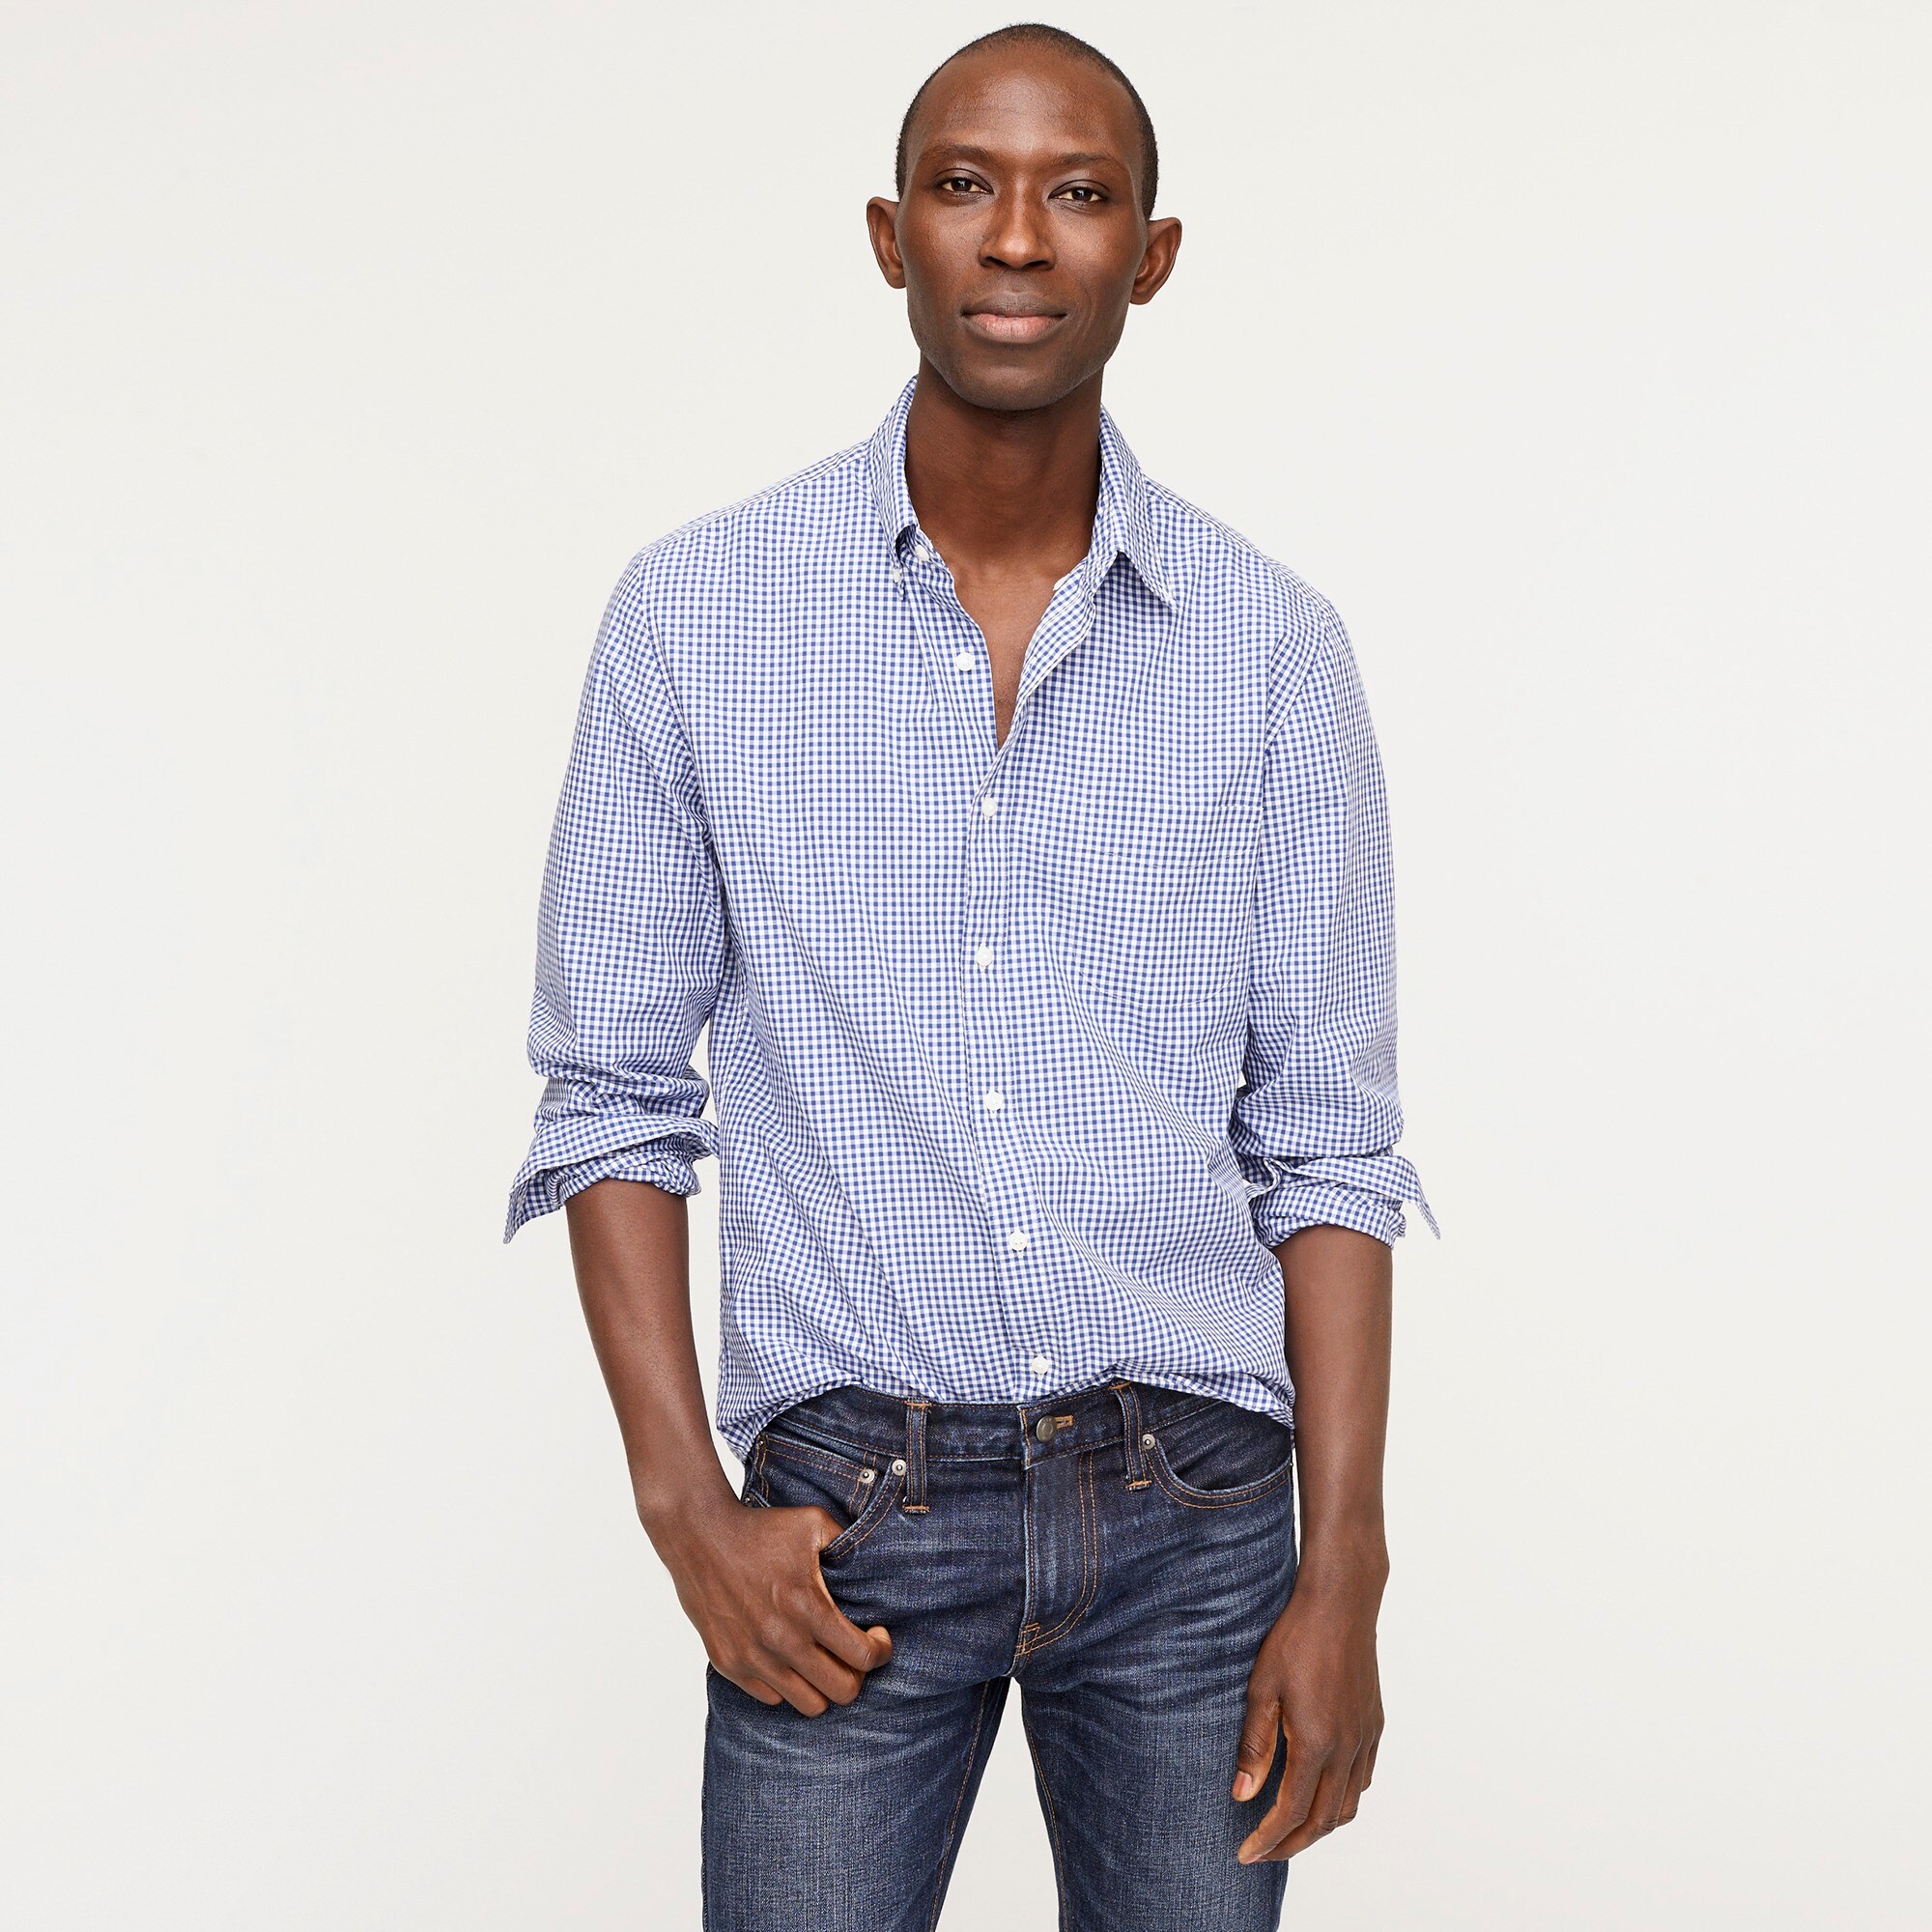 Men's Shirts, Jeans, Shoes & More : Men's New Arrivals | J.Crew